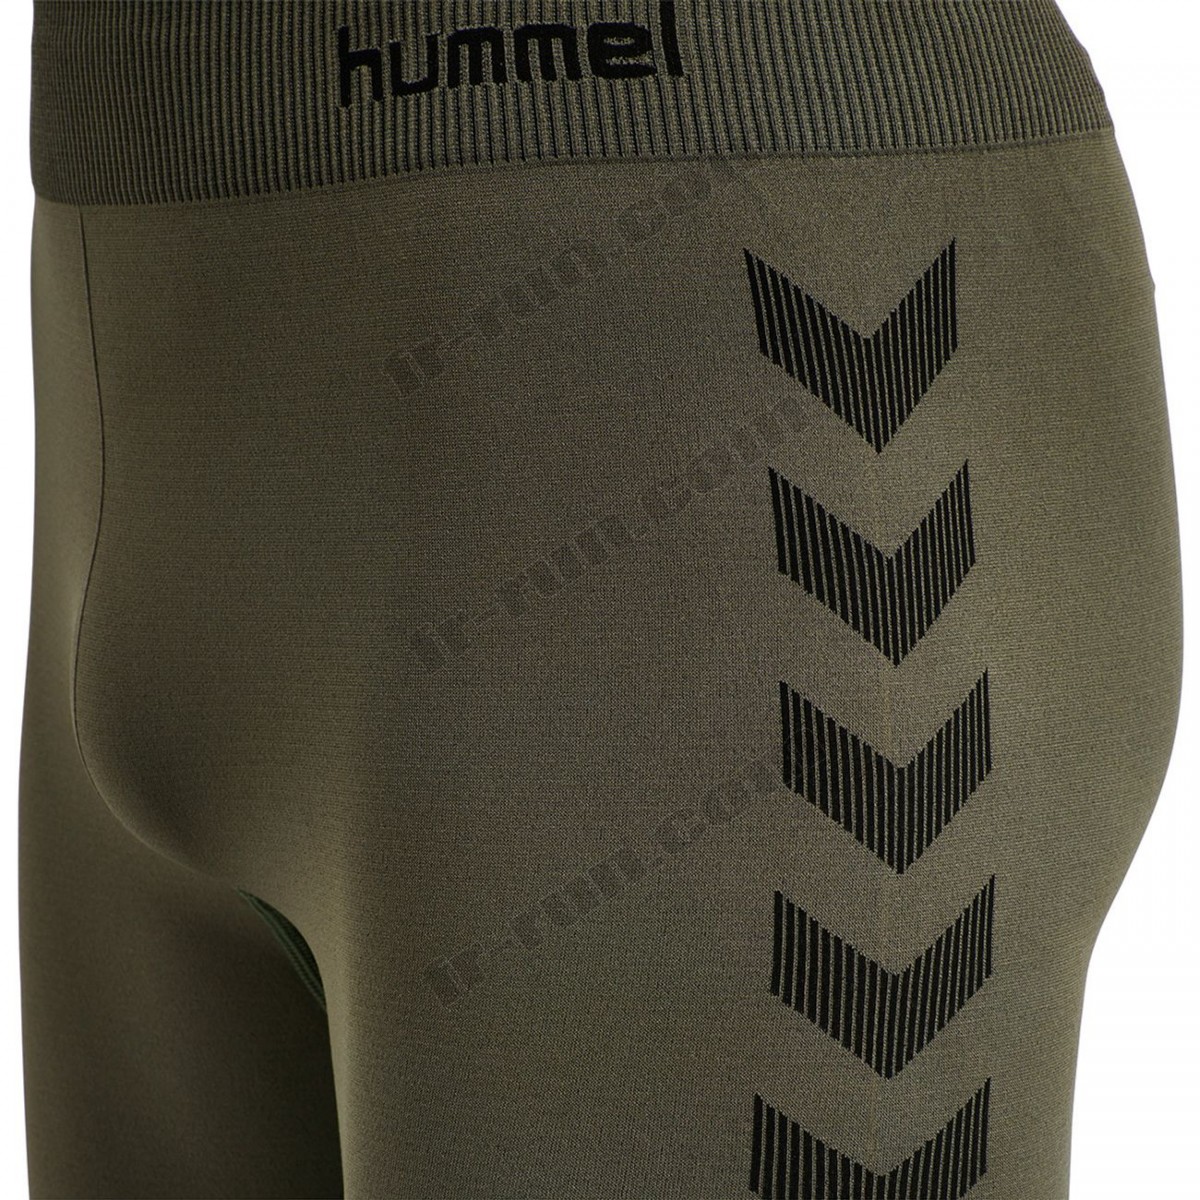 Hummel/Fitness homme HUMMEL Short de compression Hummel hmlfirst training √ Nouveau style √ Soldes - -6